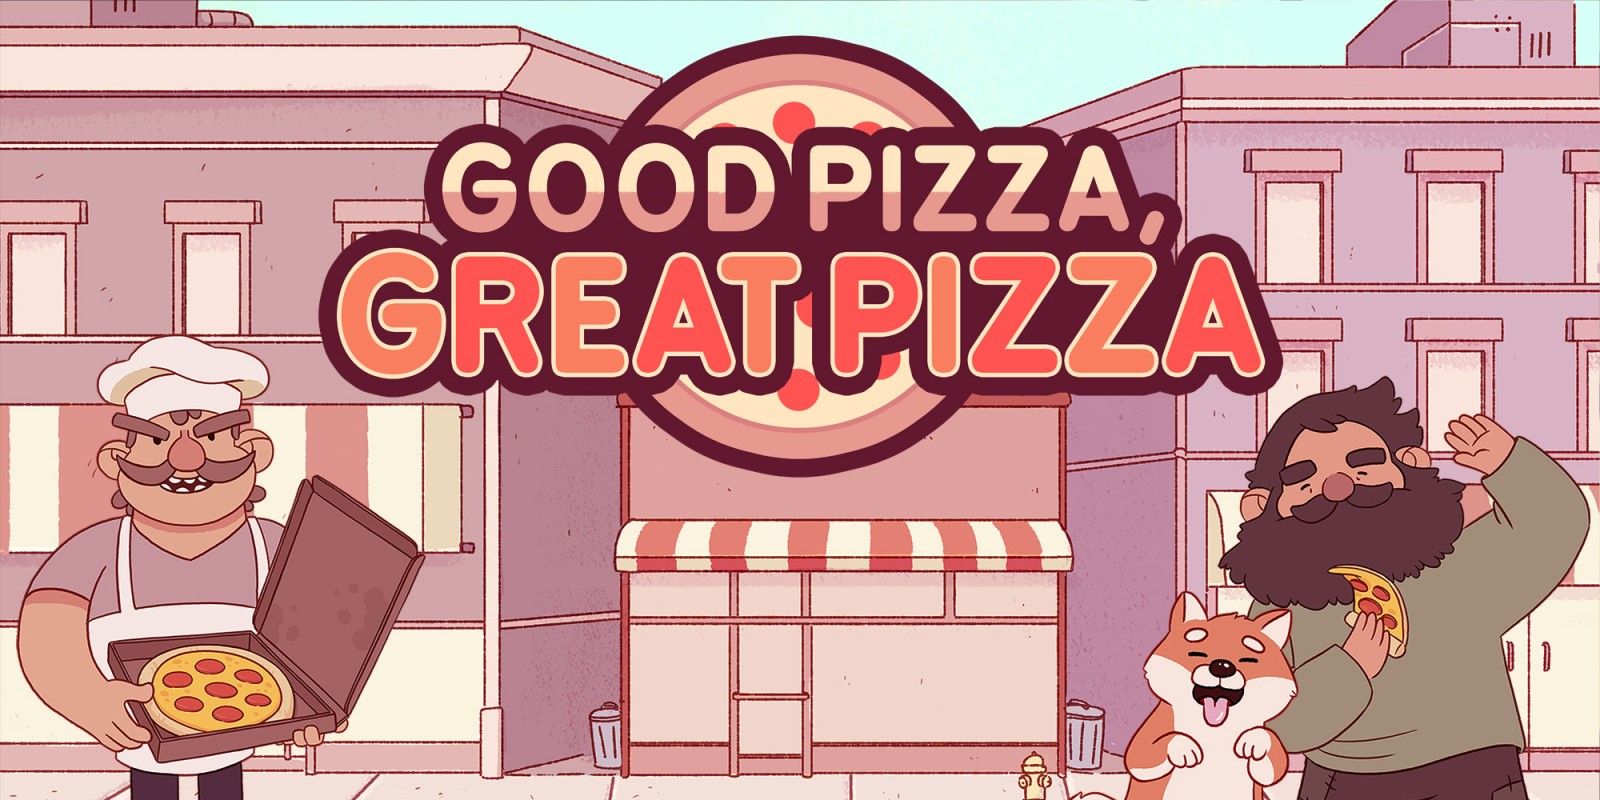 jaquette du jeu vidéo Bonne Pizza, Super Pizza